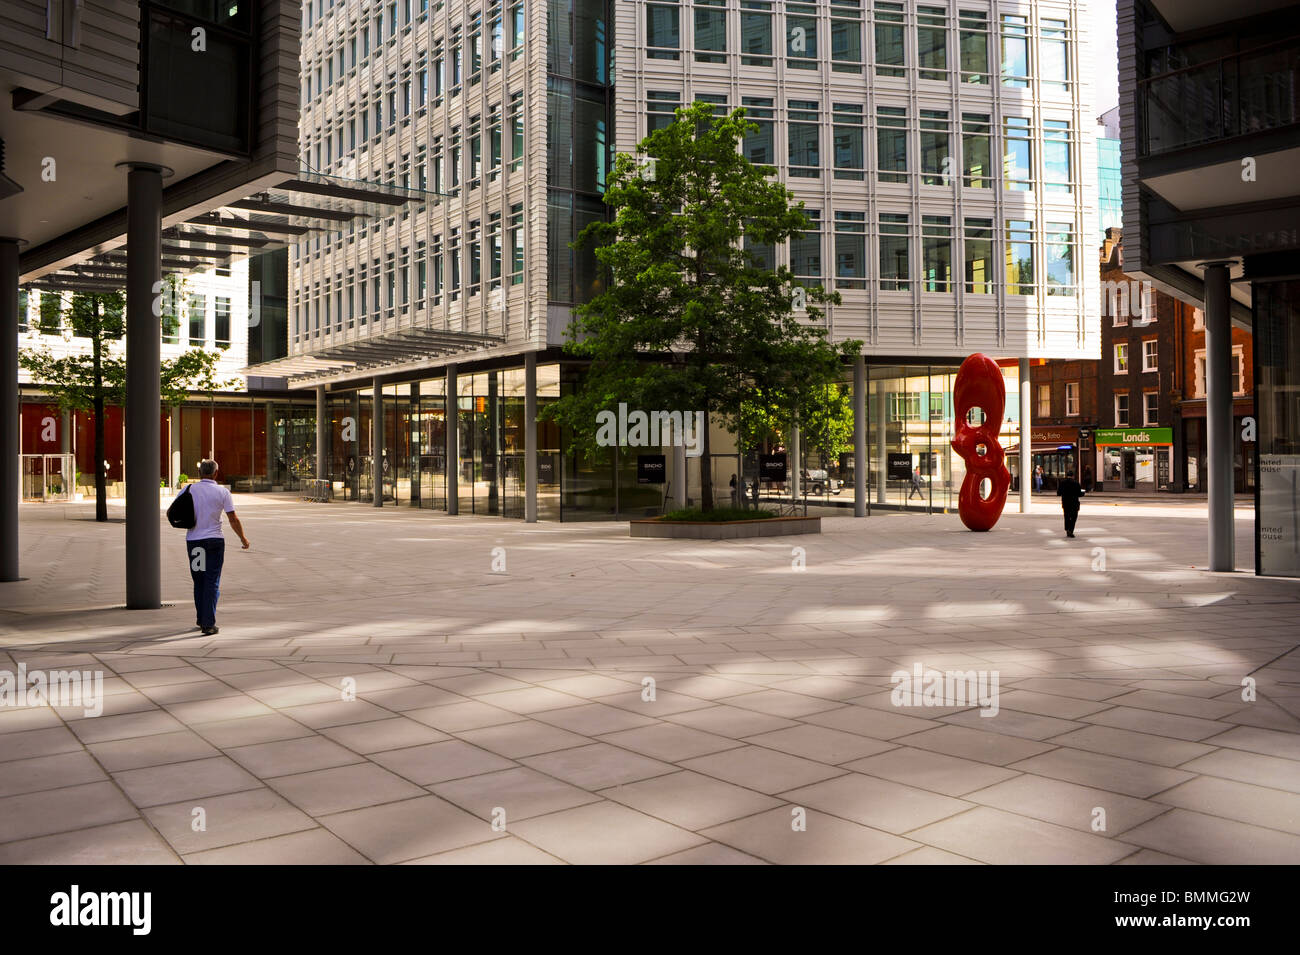 Construction de nouveaux bâtiments, immeubles de bureaux, 'Central Street Giles', Londres, nouveau bâtiment commercial UK, scène de rue, architecture moderne, centre-ville Banque D'Images